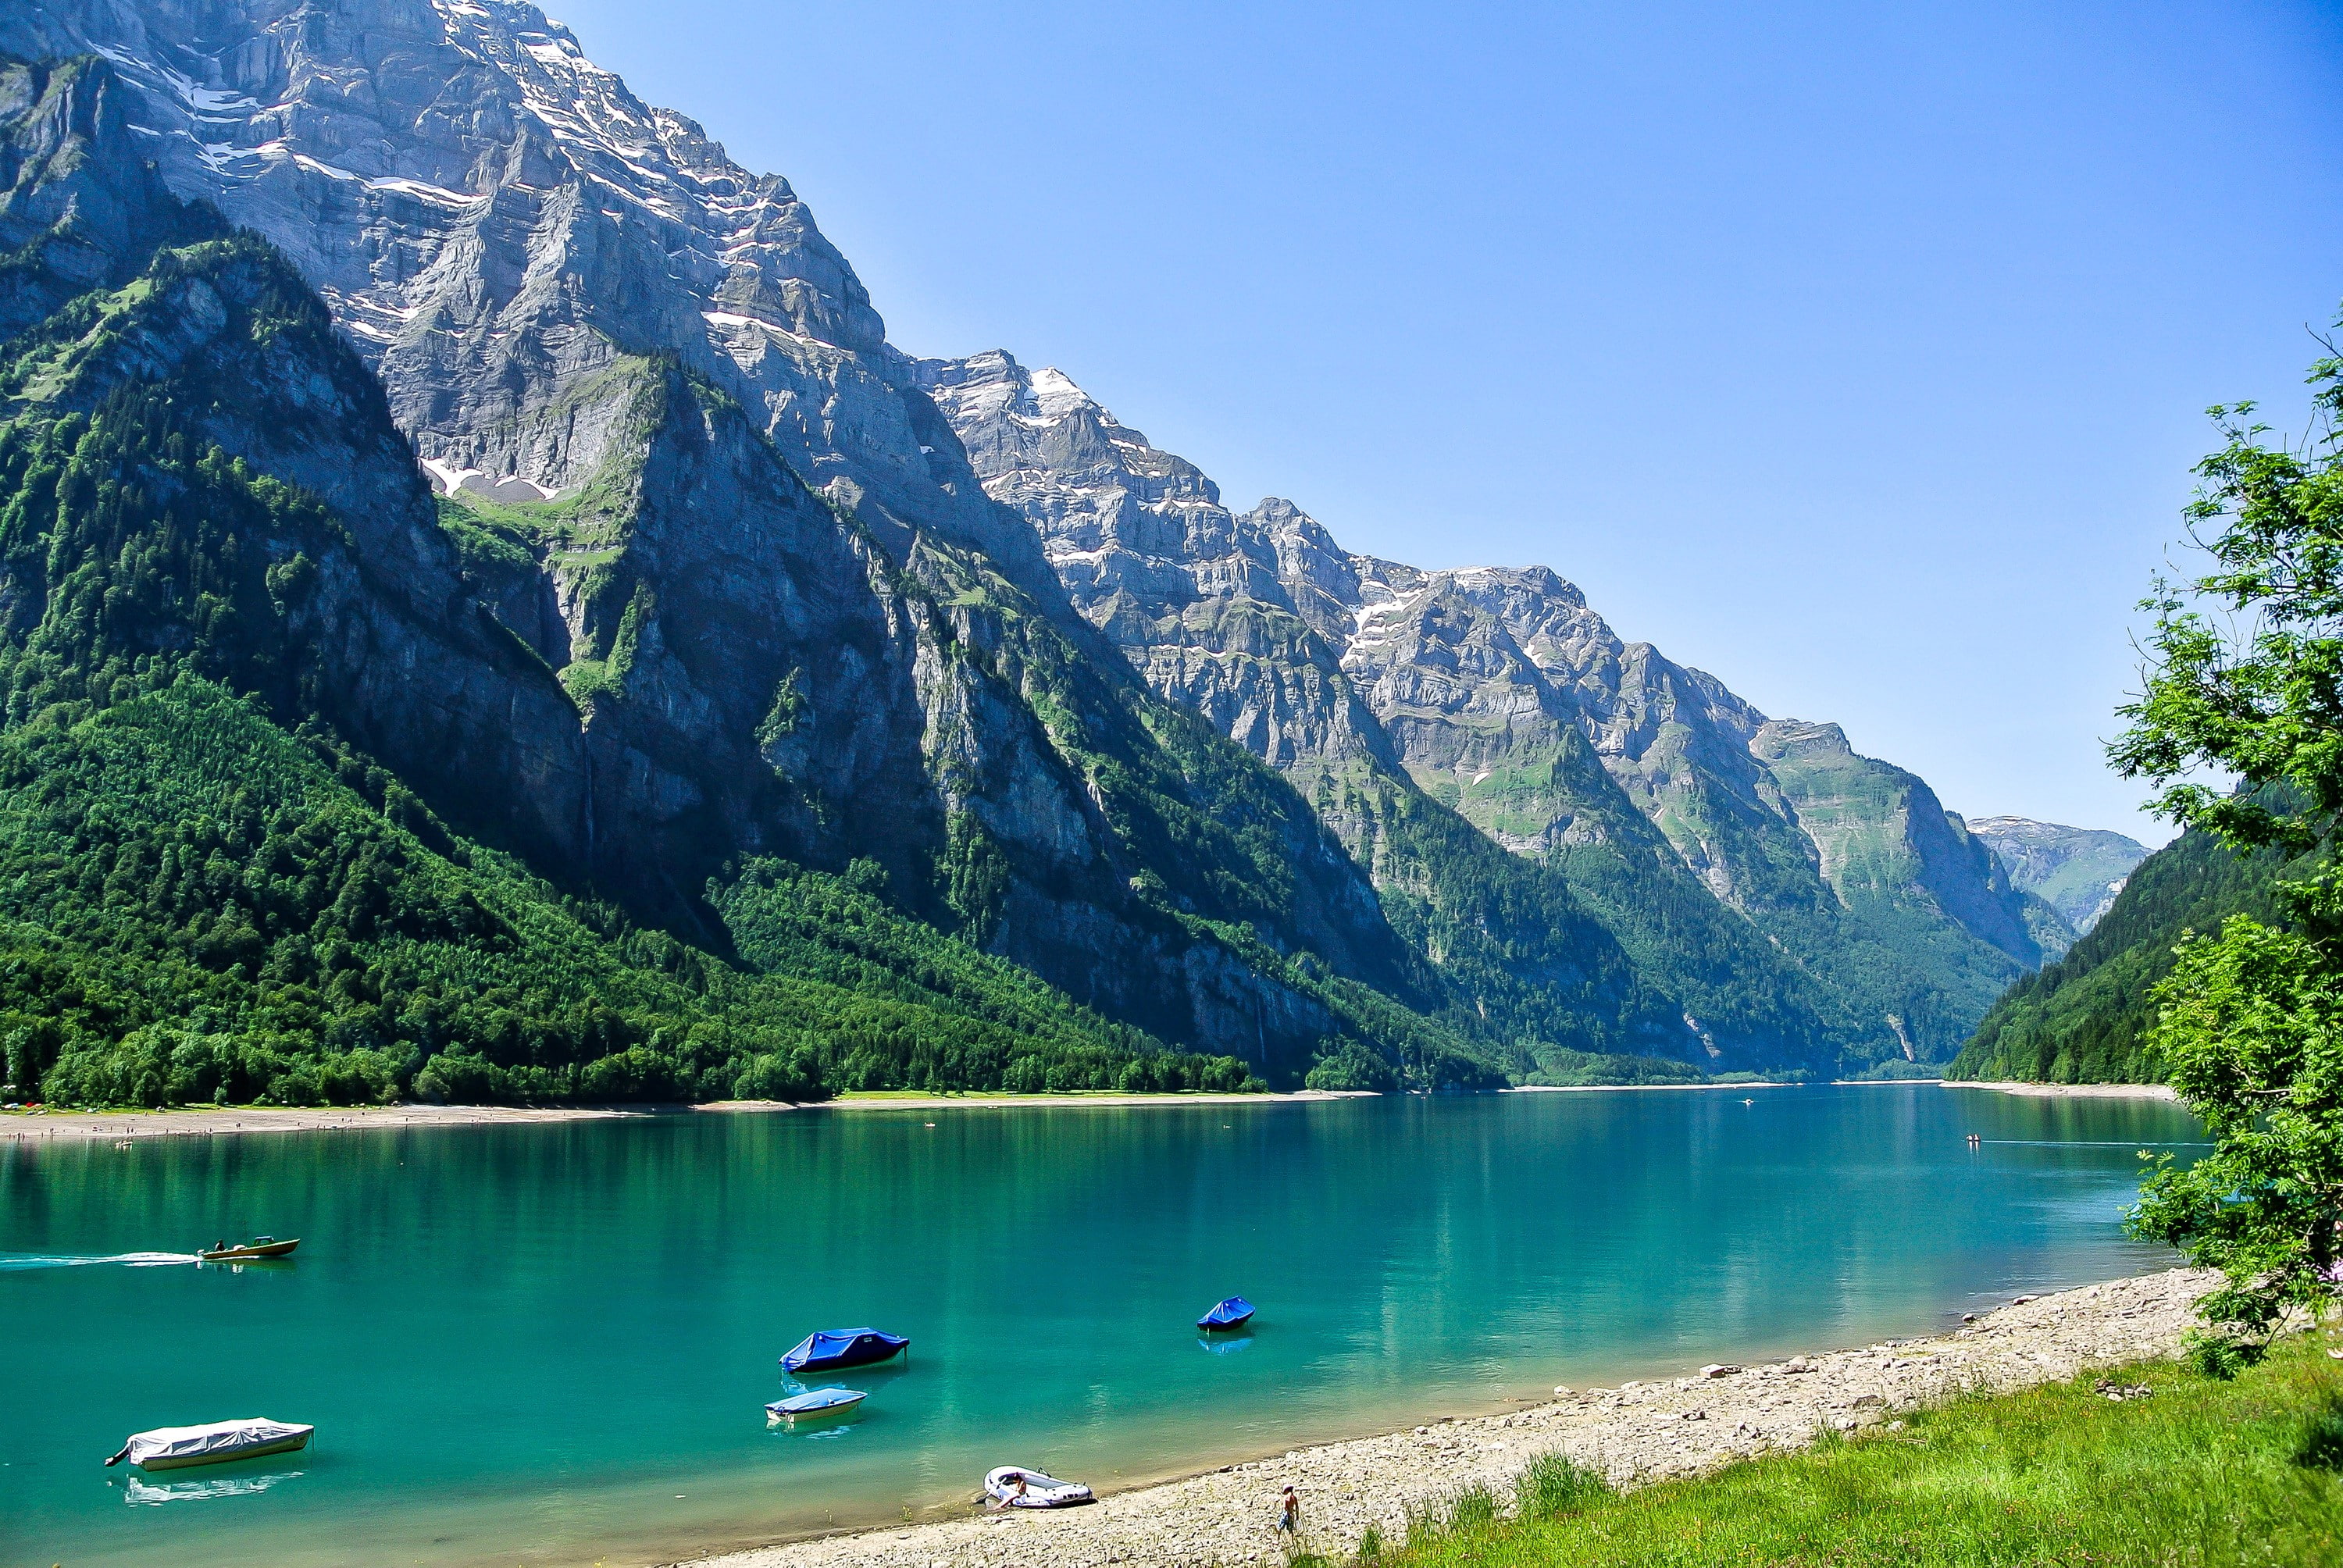 Switzerland, Glarus, Mountain, Lake, Beach, water, scenics - nature